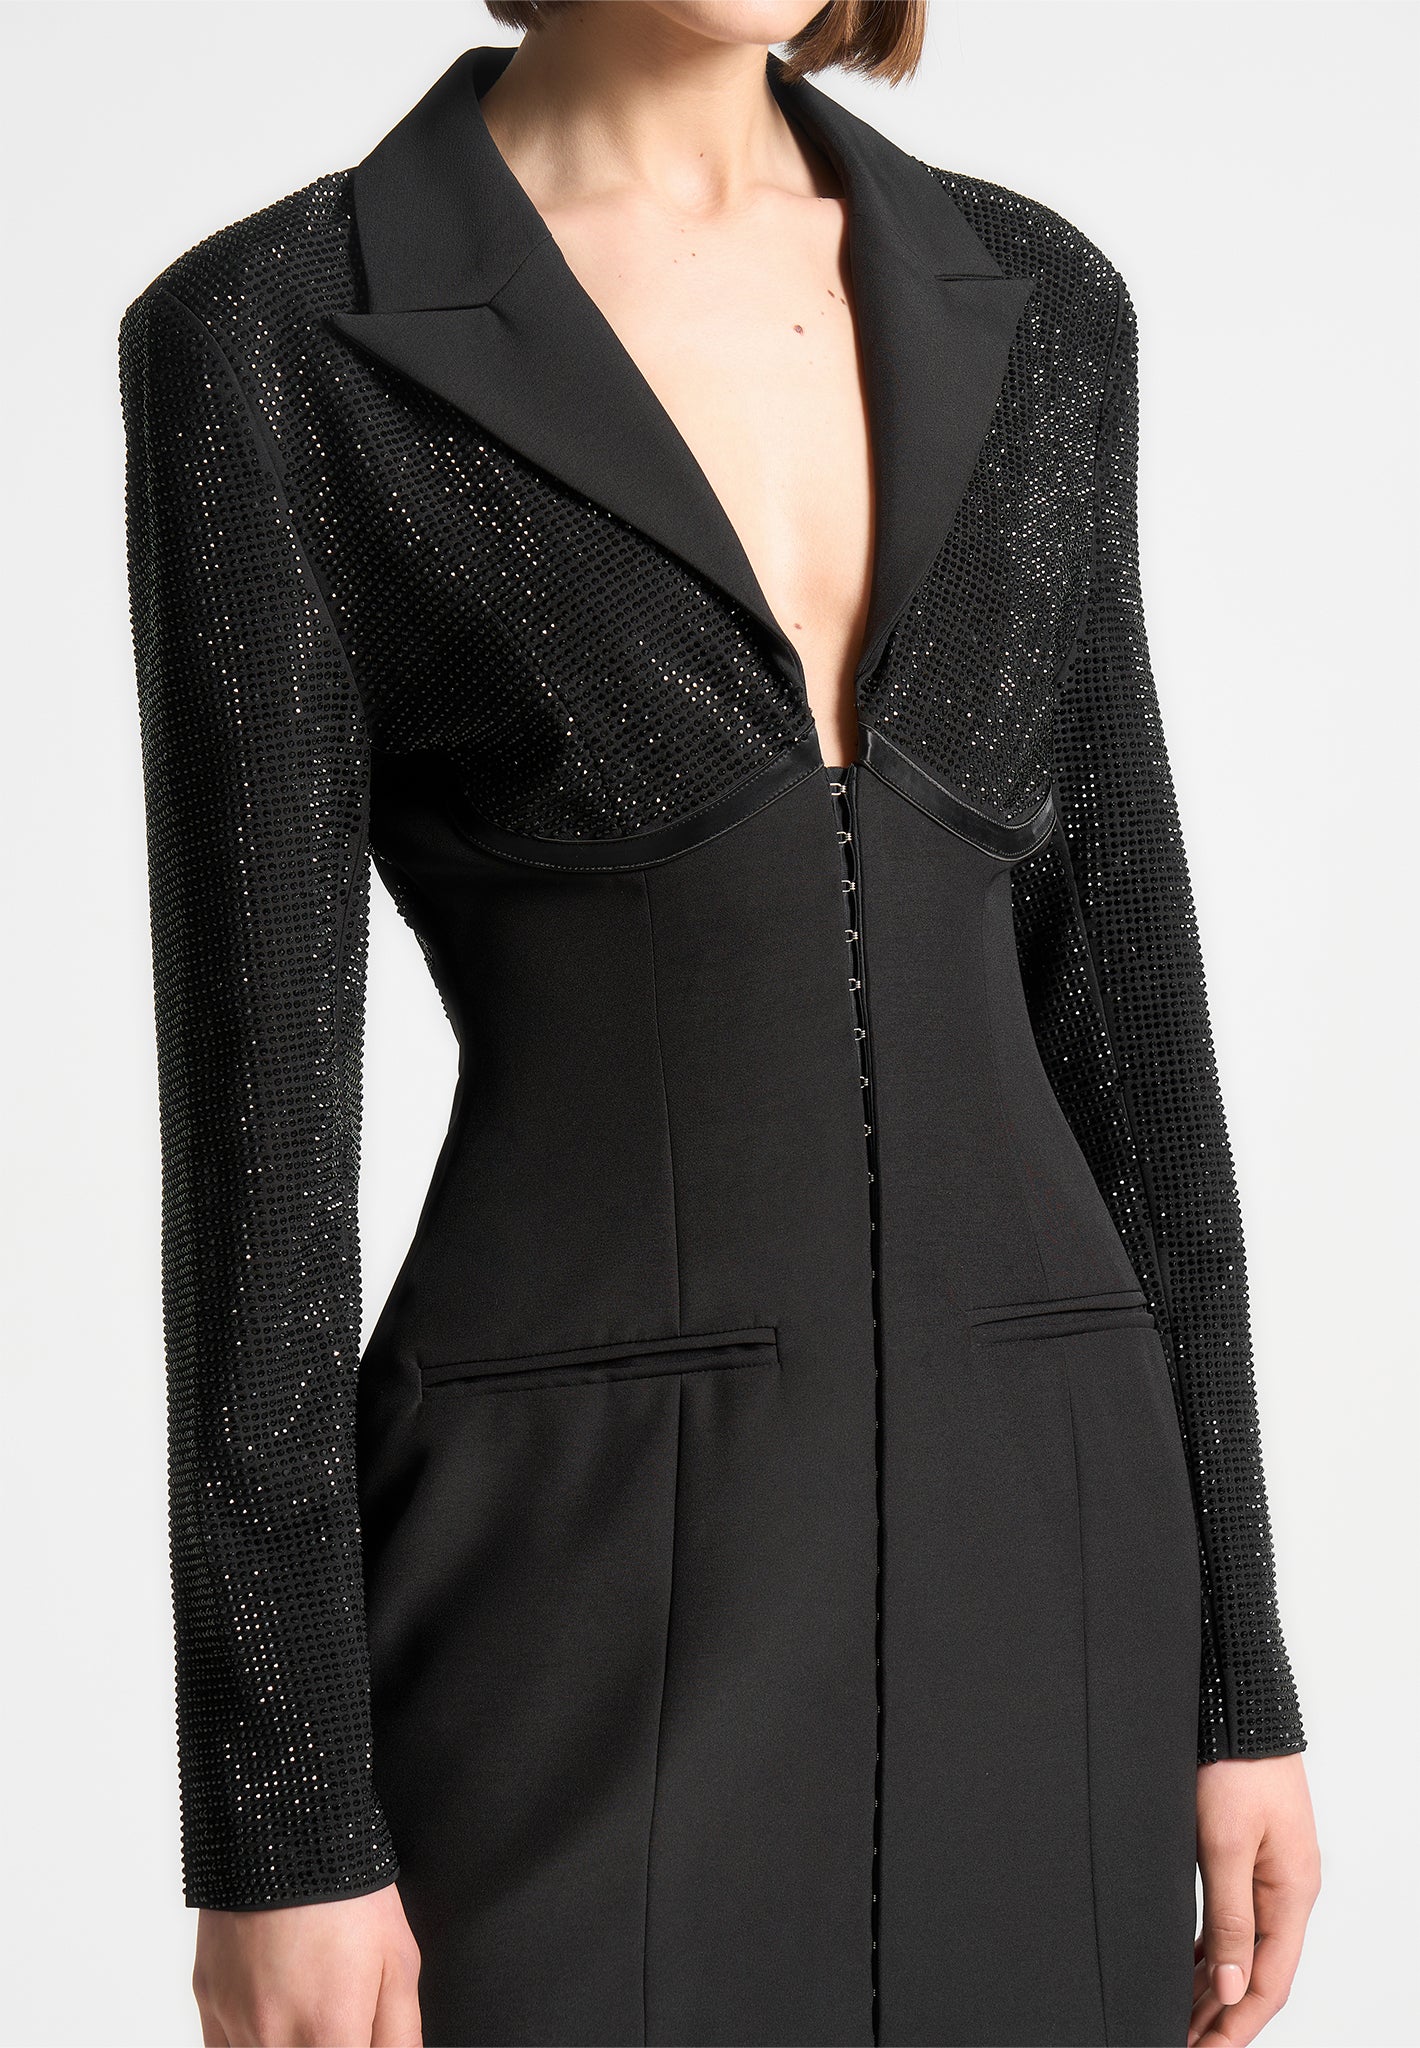 embellished-corset-blazer-dress-black